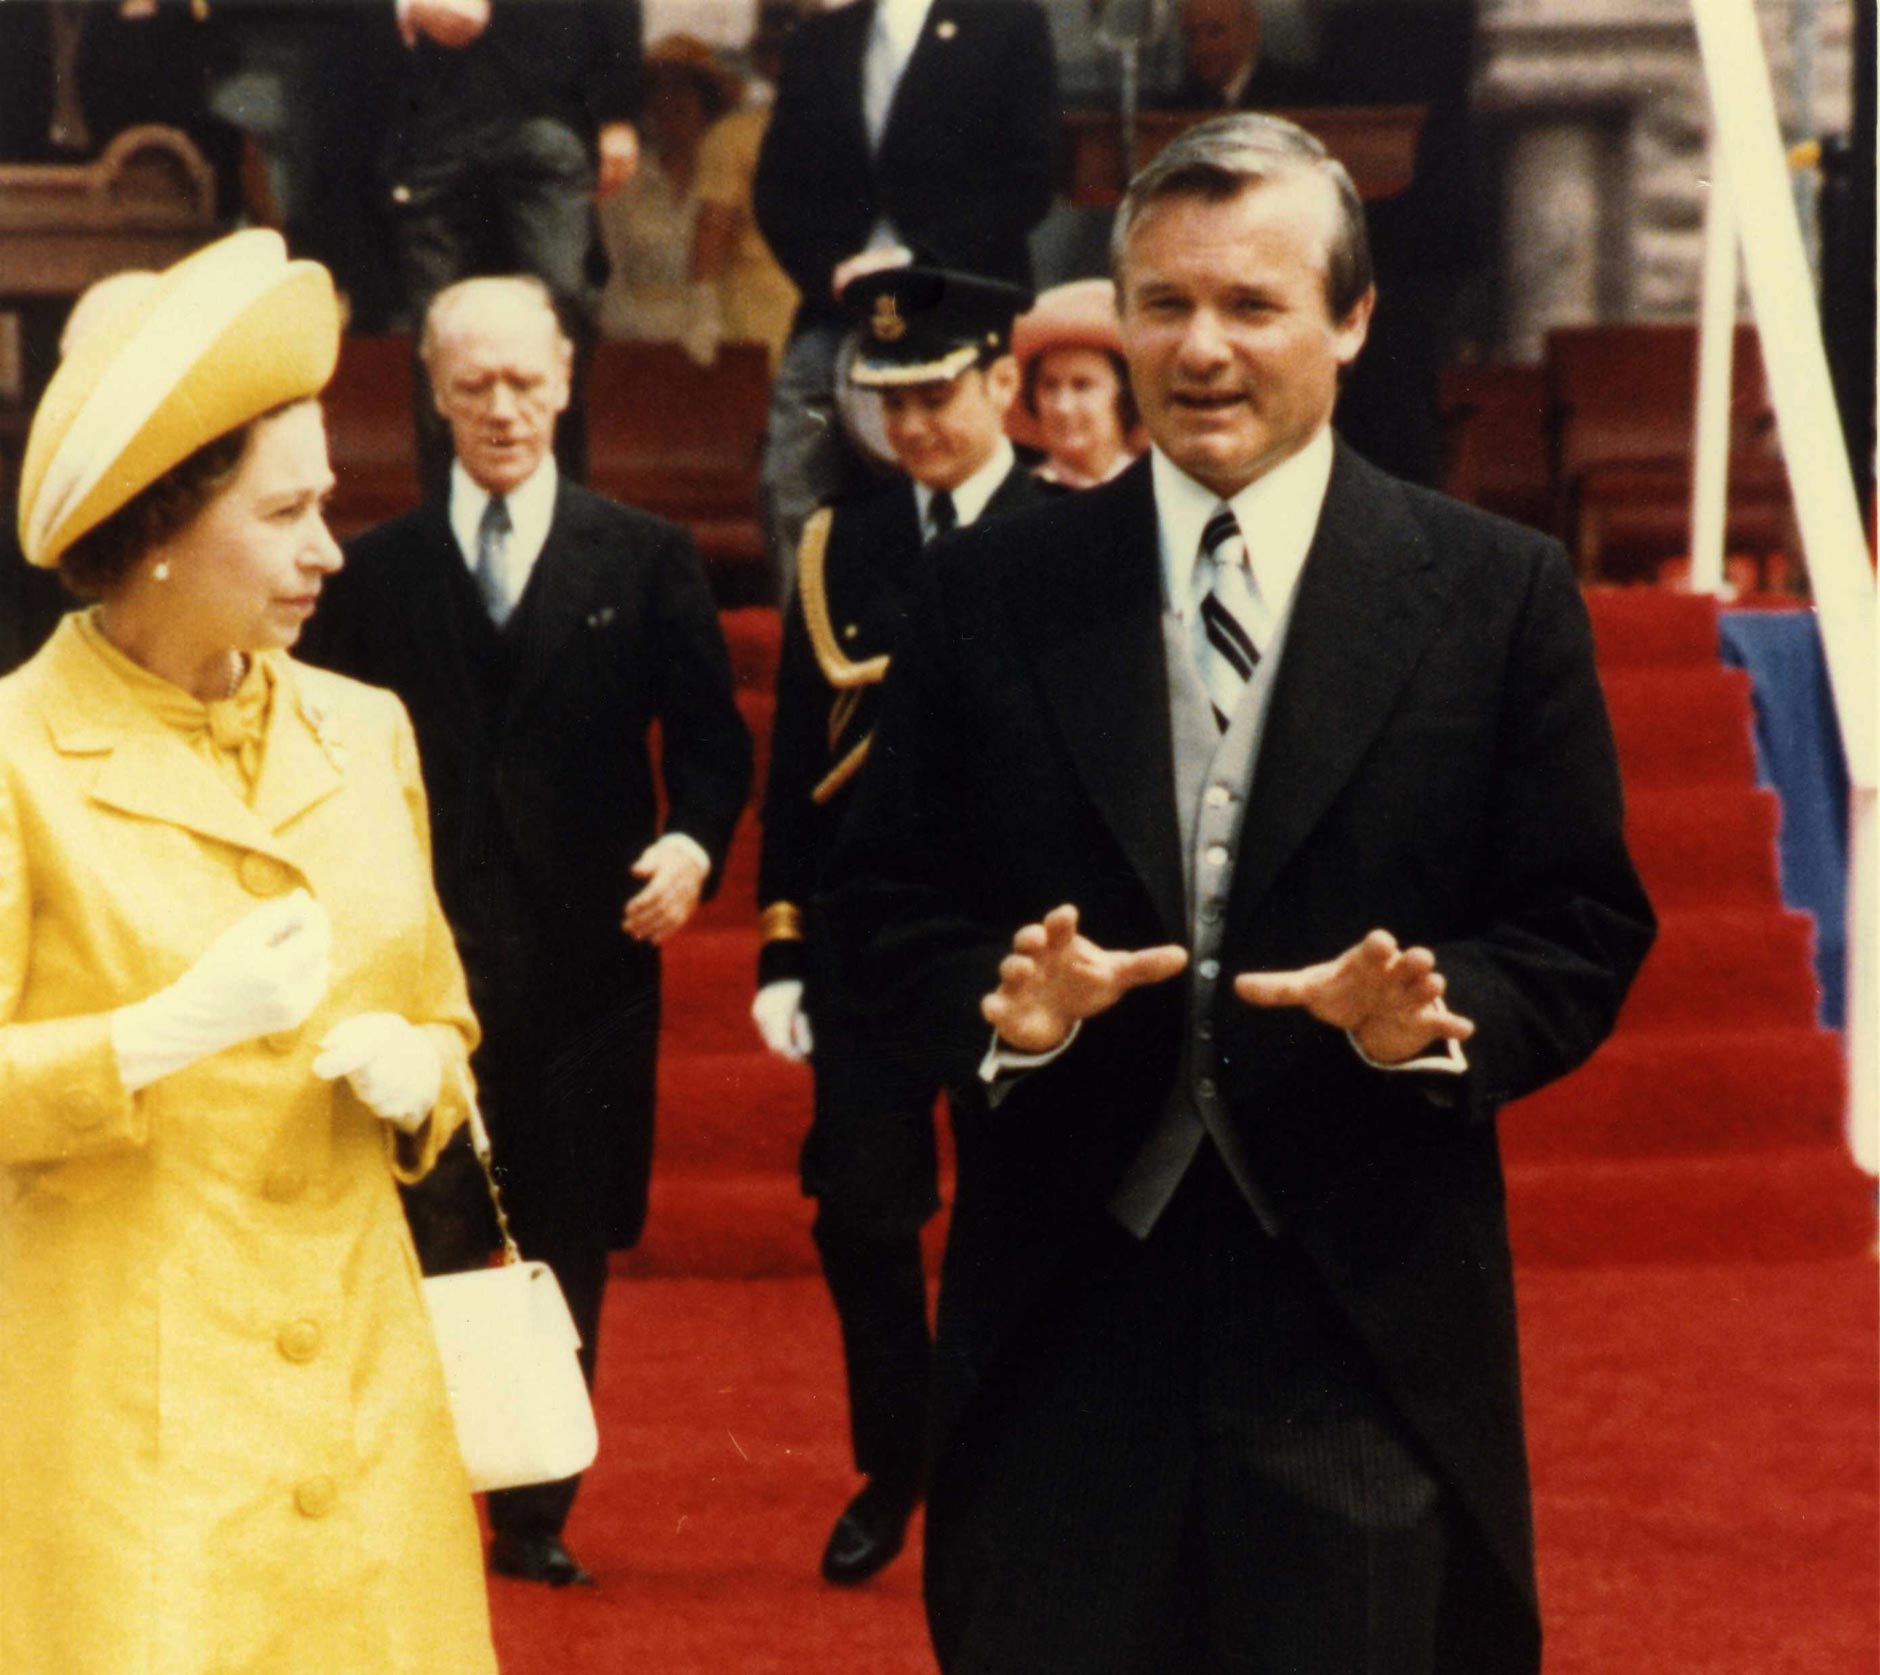 Her Majesty Queen Elizabeth II with Ontario Premier Bill Davis in front of Ontario's Legislative Building.